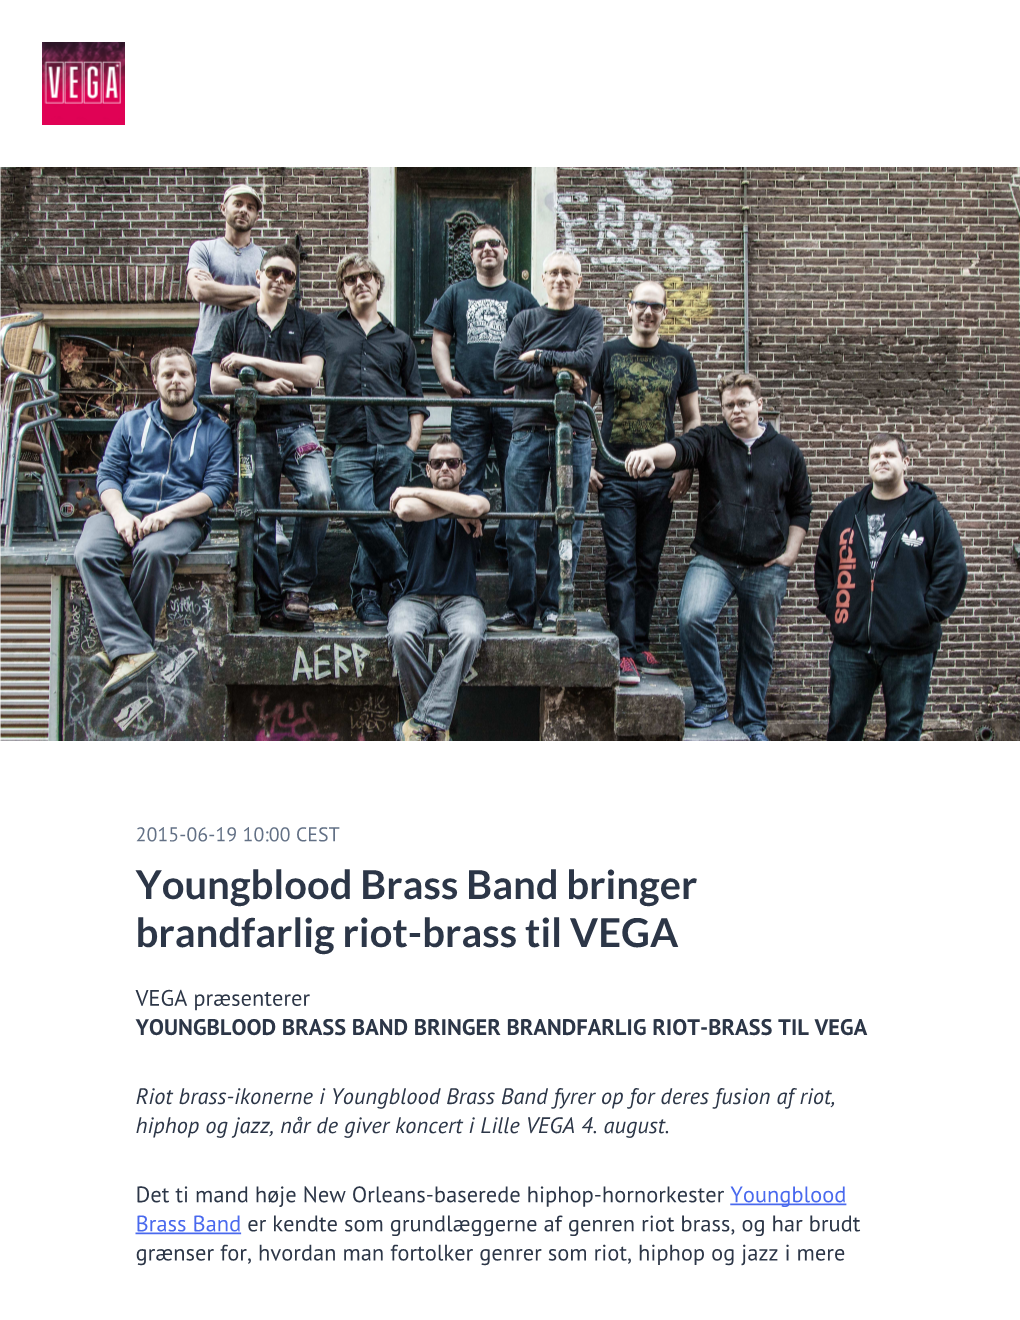 Youngblood Brass Band Bringer Brandfarlig Riot-Brass Til VEGA